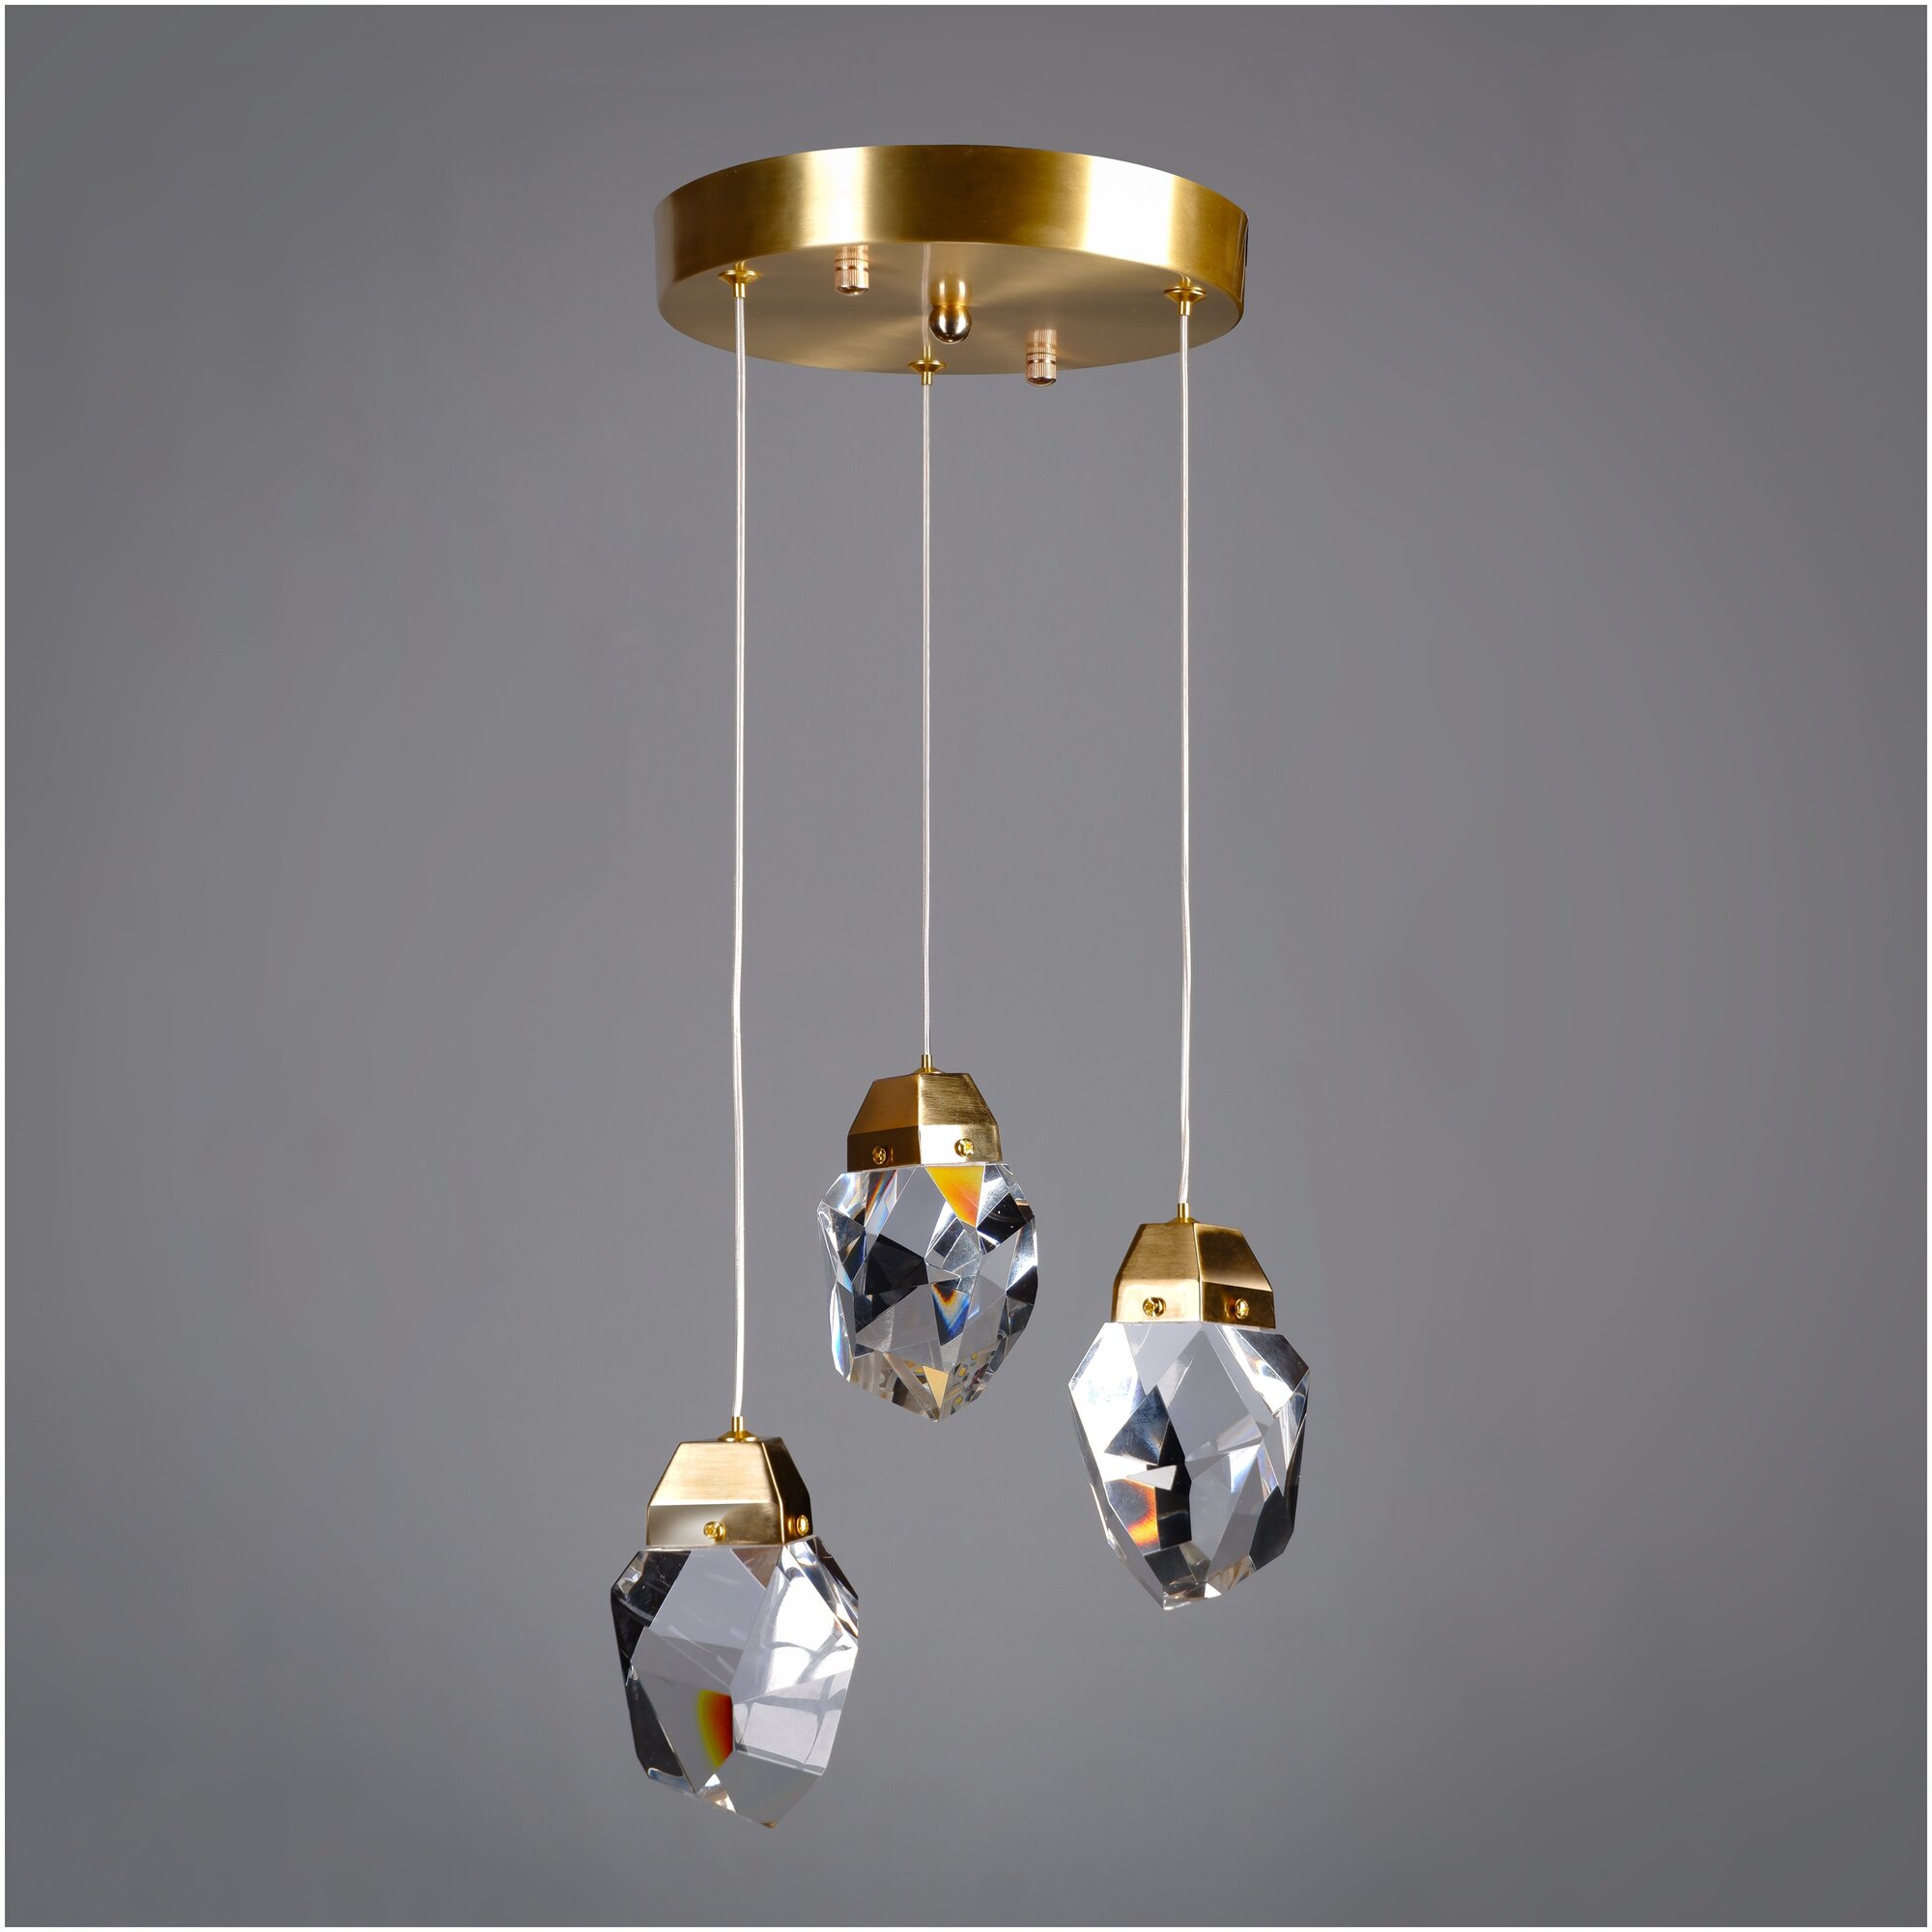 Подвесной светильник Sofitroom Diamante Gold на круге / LED 3 светильника потолочных / плафон стекло, корпус металл цвет золотой / люстра светодиодная